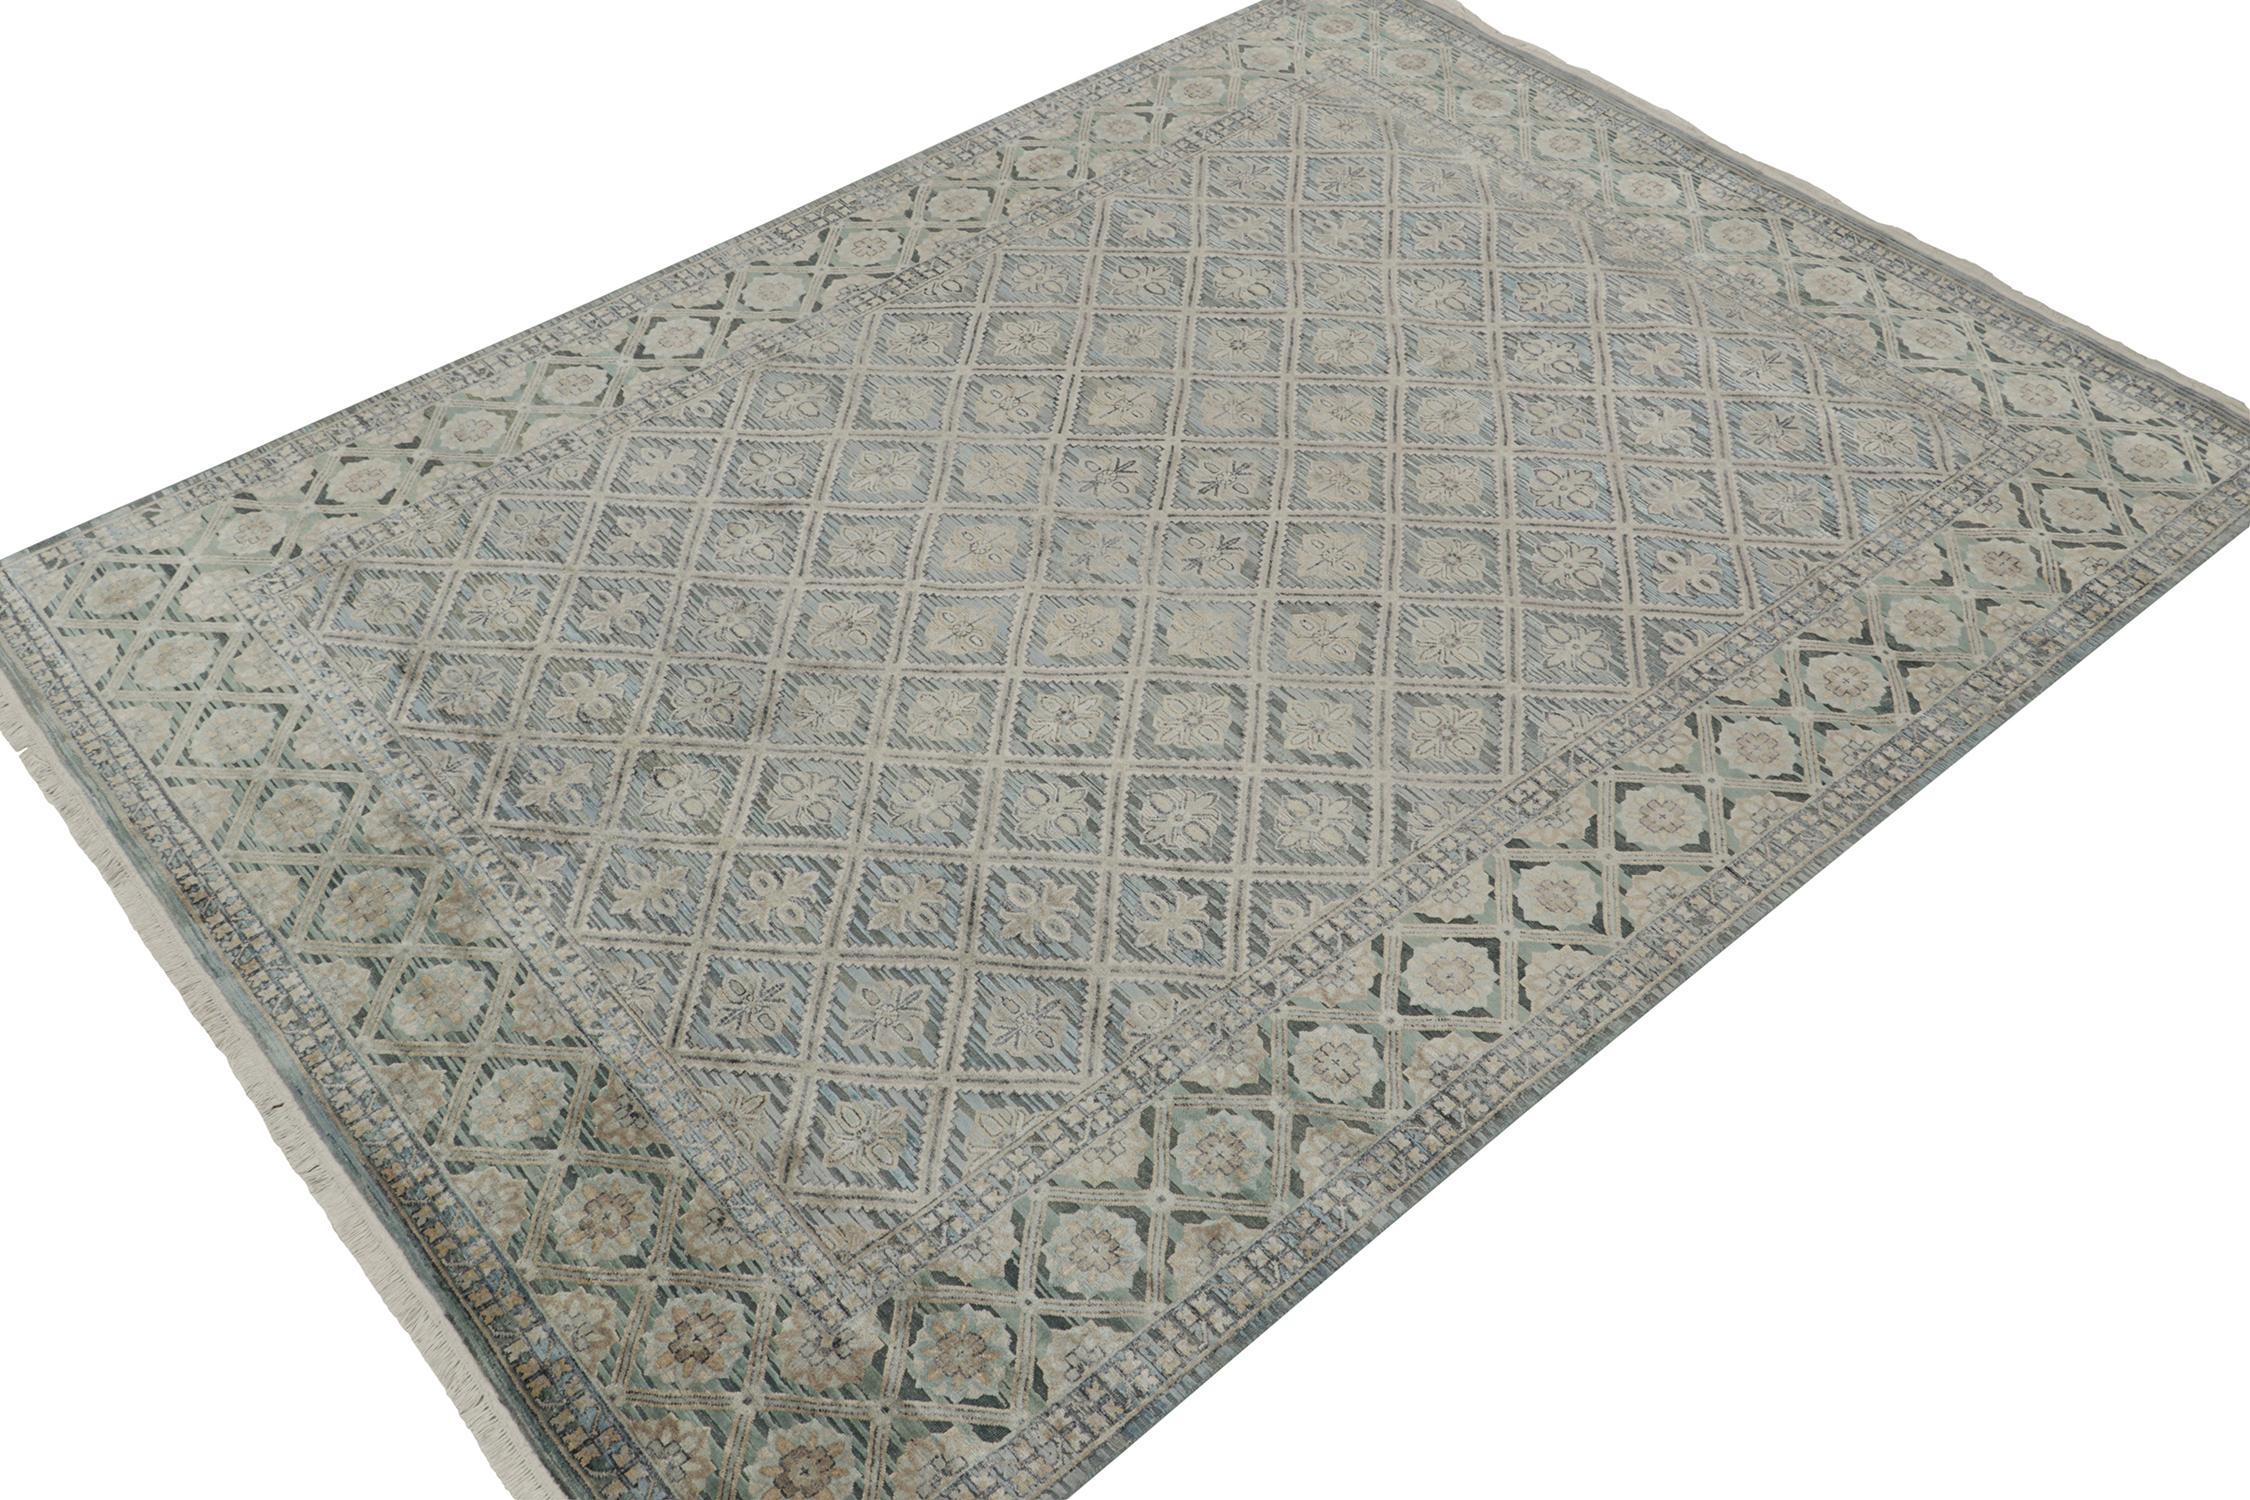 Dieser antike französische Deco-Teppich im Format 9x13 ist die nächste Ergänzung zu Rug & Kilim's seltener Auswahl an klassischen Teppichen. Handgeknüpft aus Wolle, ca. 1920-1930.
Weiter zum Design: 
Dieses äußerst seltene Stück ist ein Beispiel